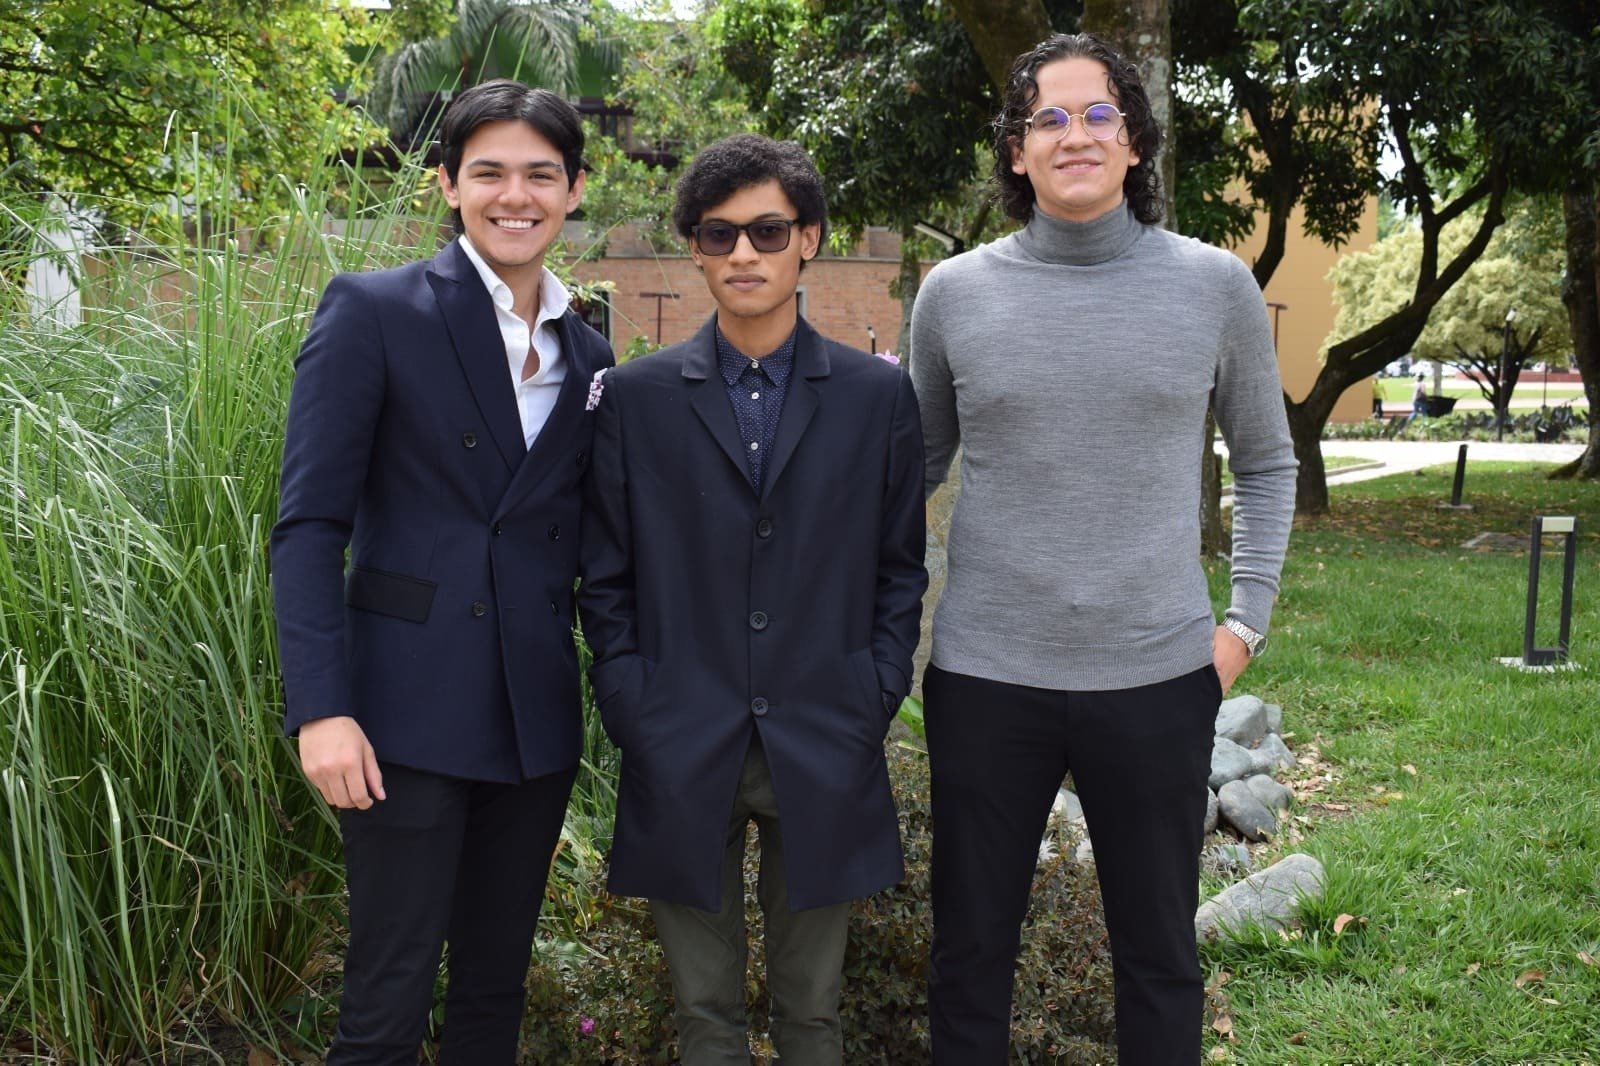 Estudiantes de la Facultad de Derecho de la UPB, Alejandro Ramírez, Juan Pablo Agudelo y Marco Camacho